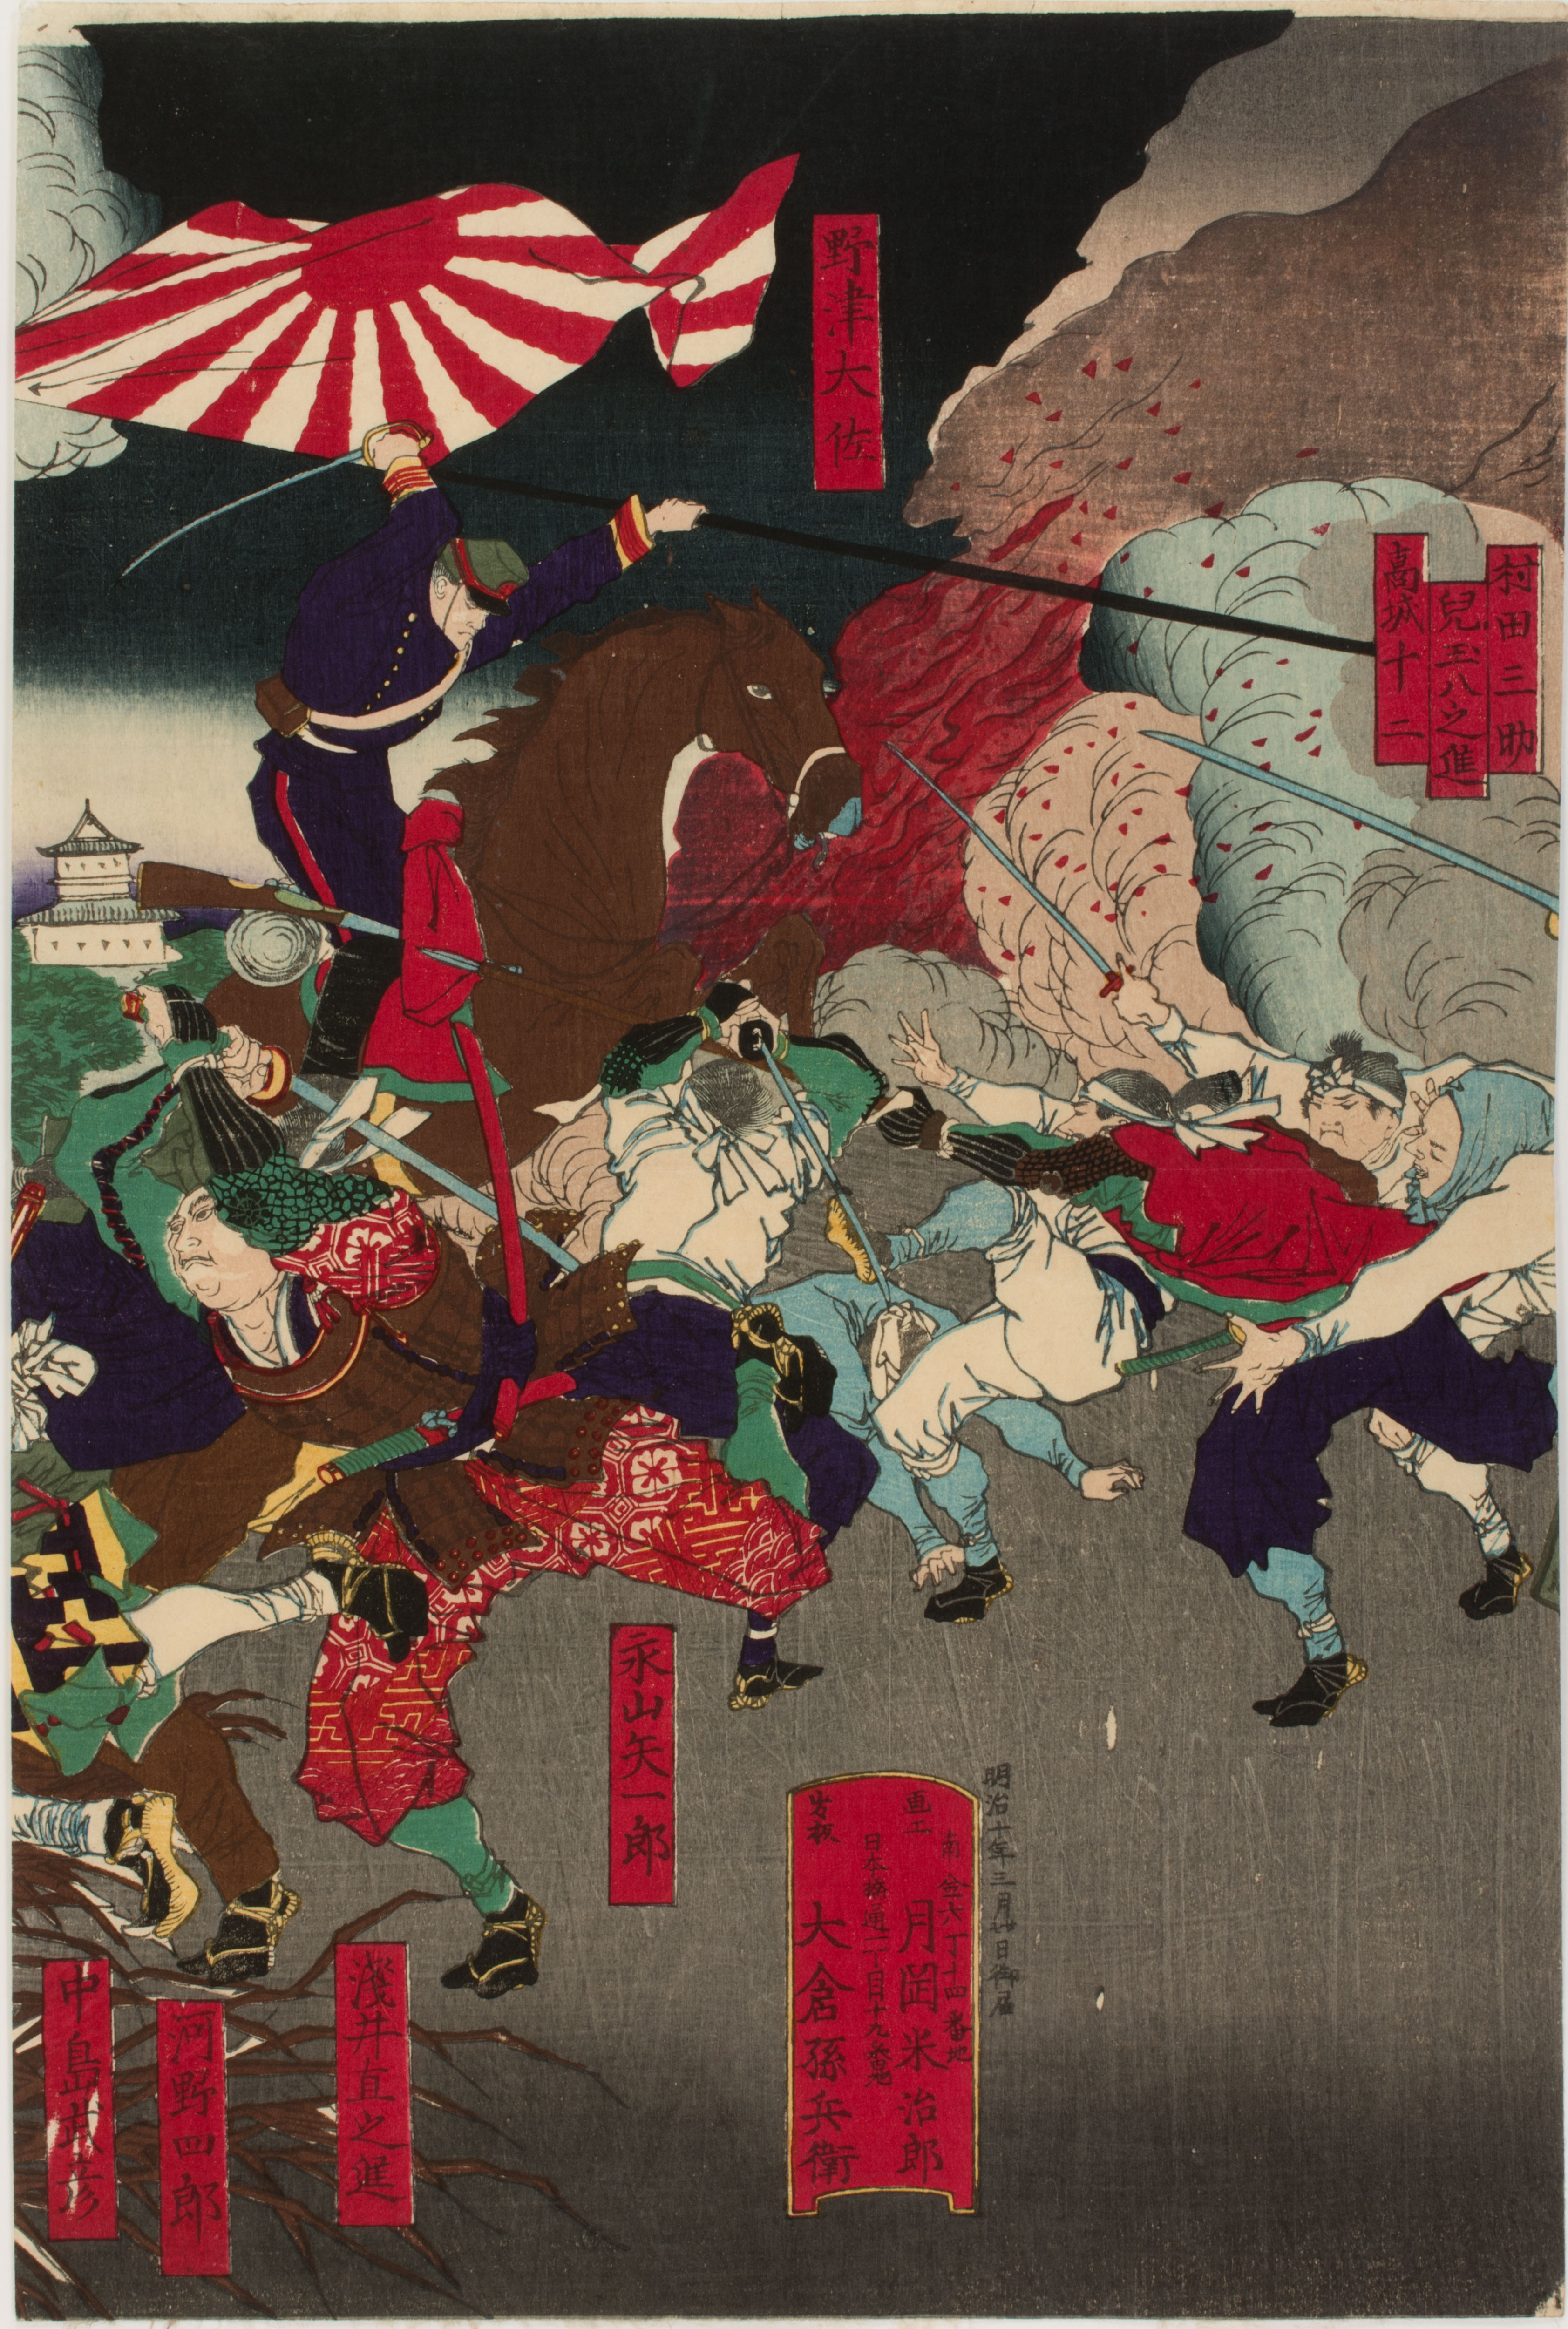 1989-47-33a-abeno-Civil War Japan-by-Tsukioka-Yoshitoshi_Philadelphia-Museum-of-Art_950-W